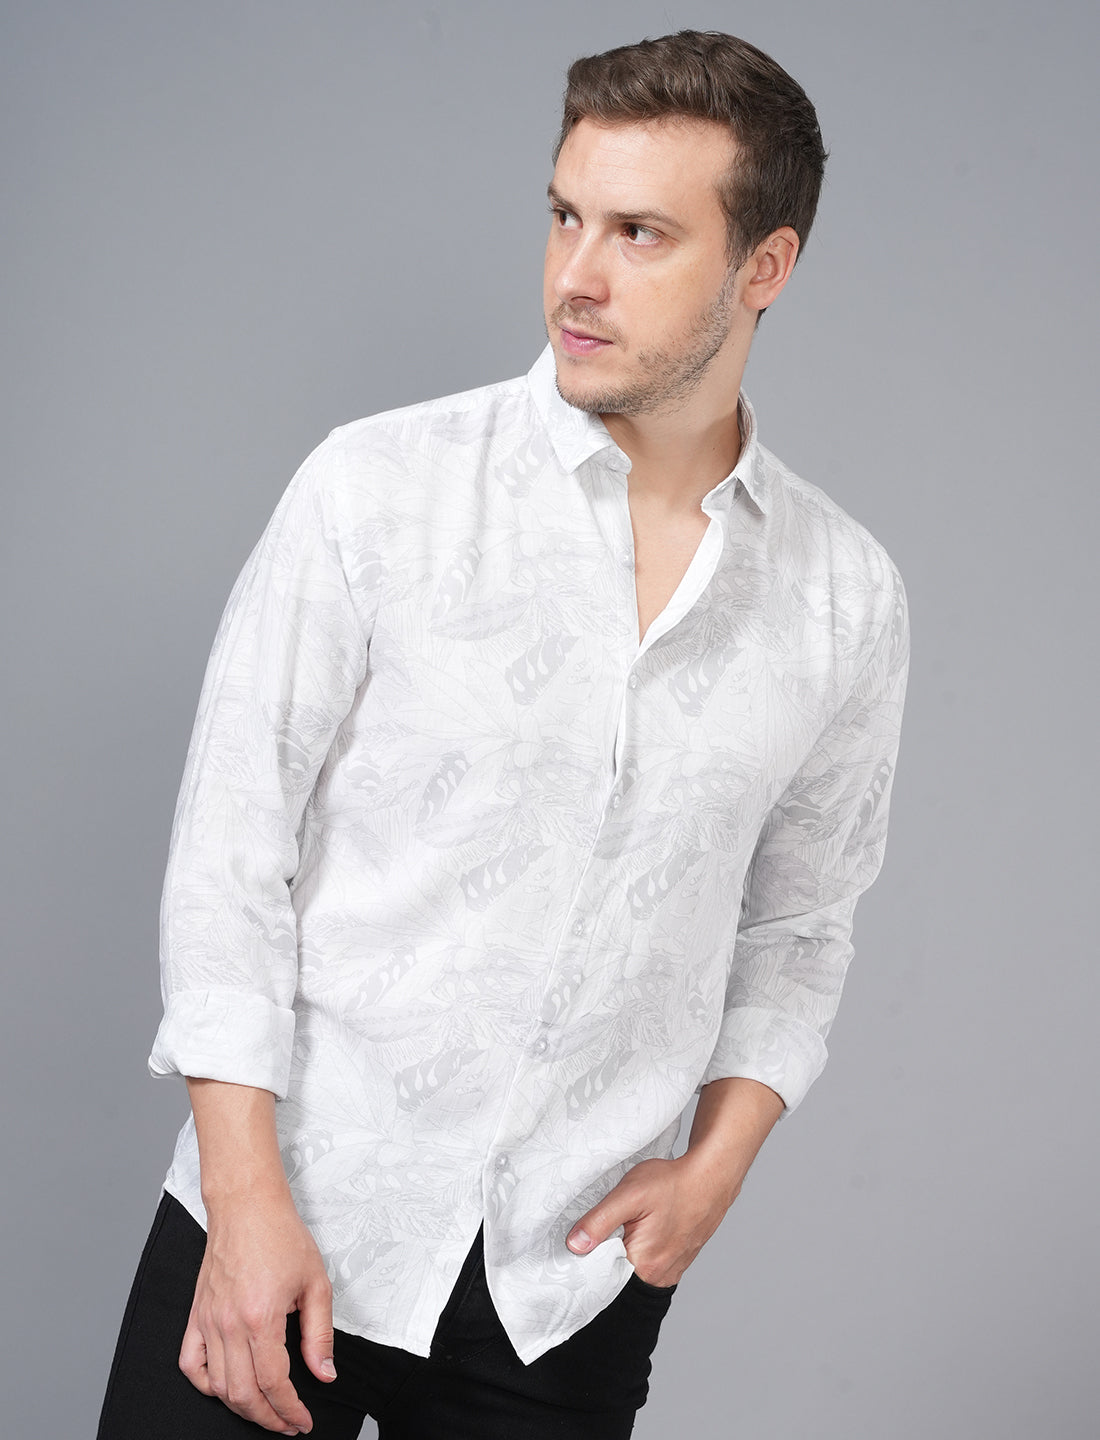 Buy White Floral Full Sleeve Shirt For Men Online